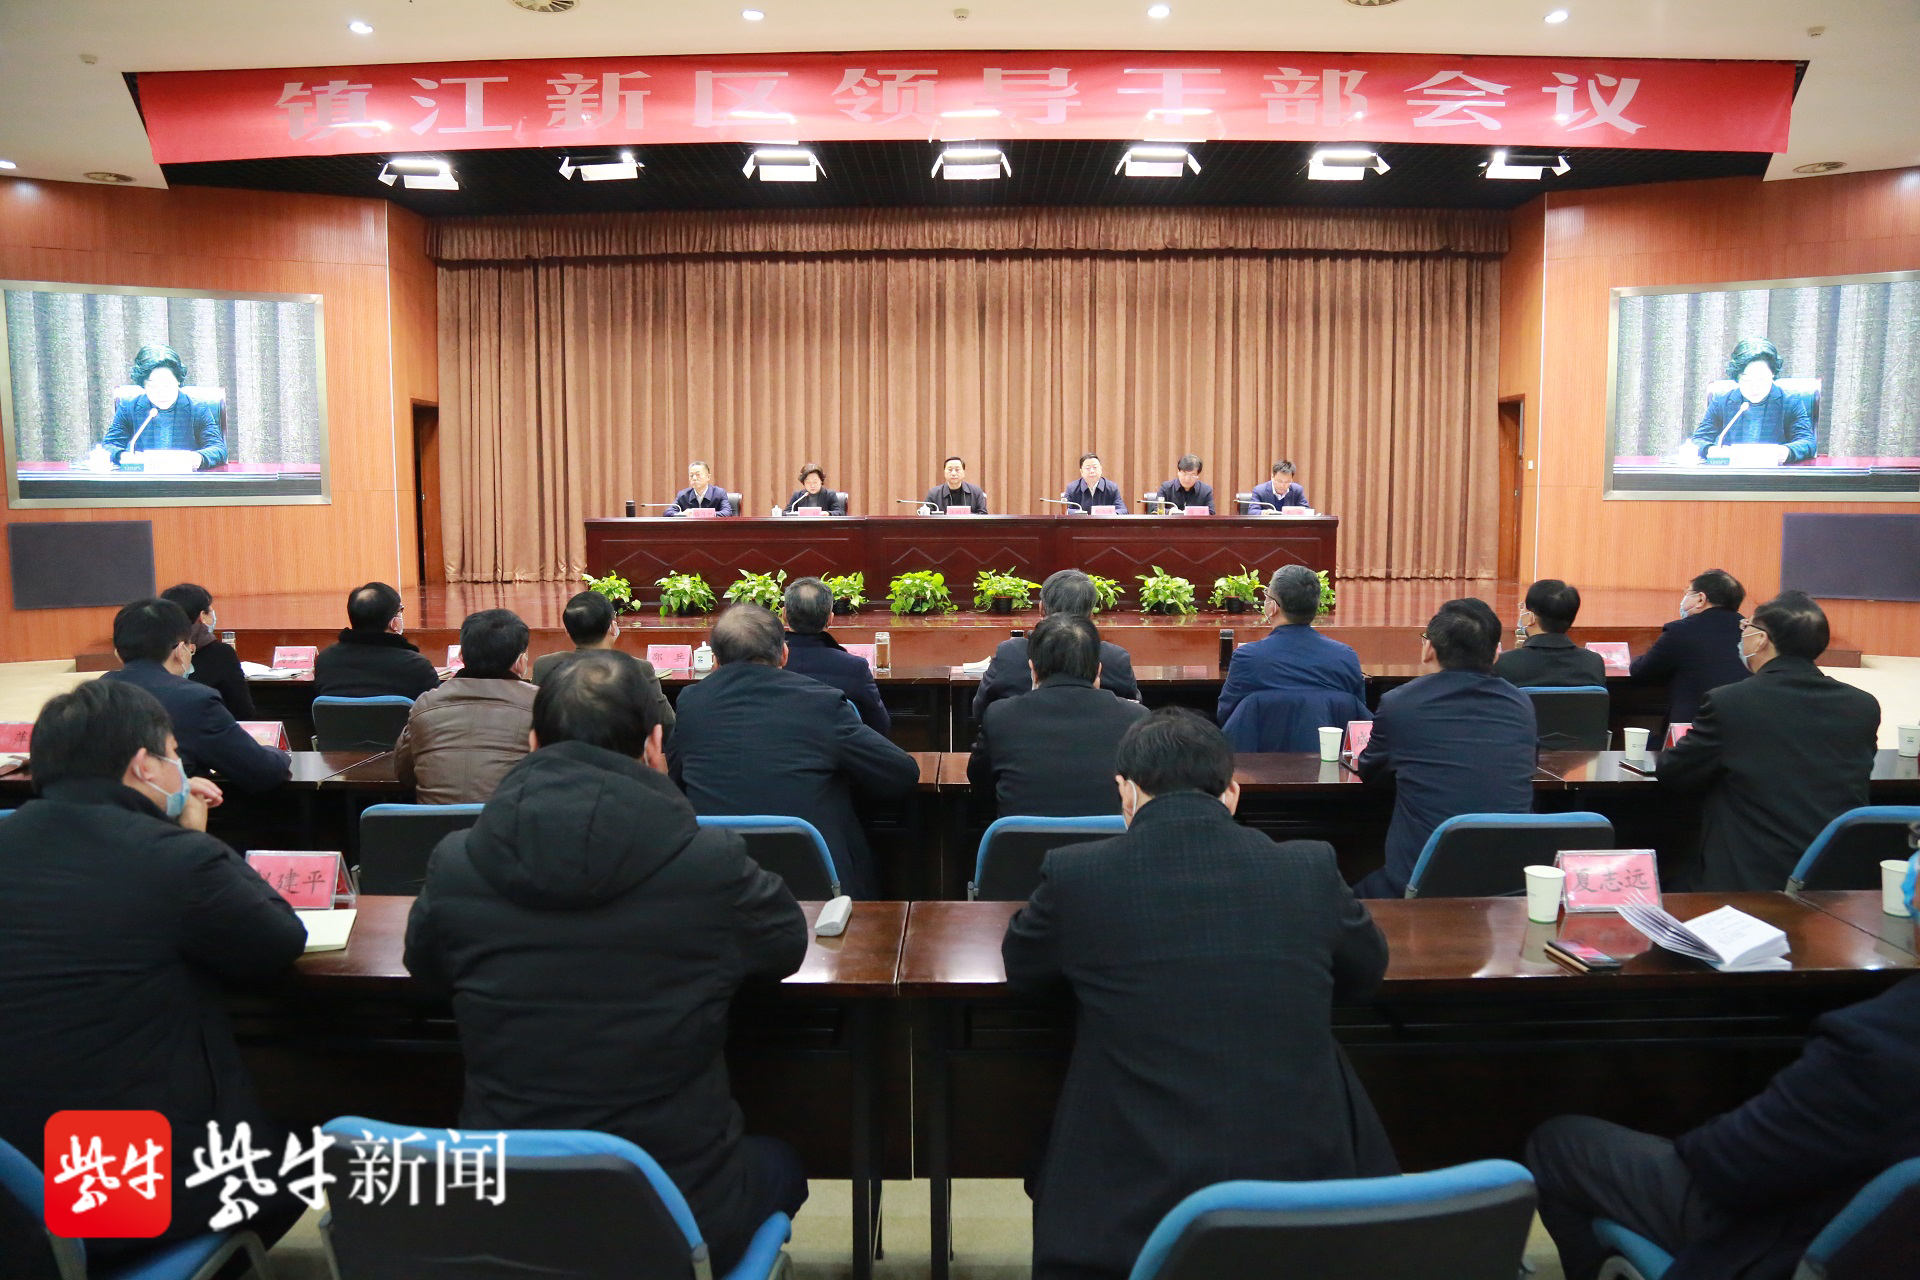 镇江市委宣布镇江新区管委会主要领导调整决定